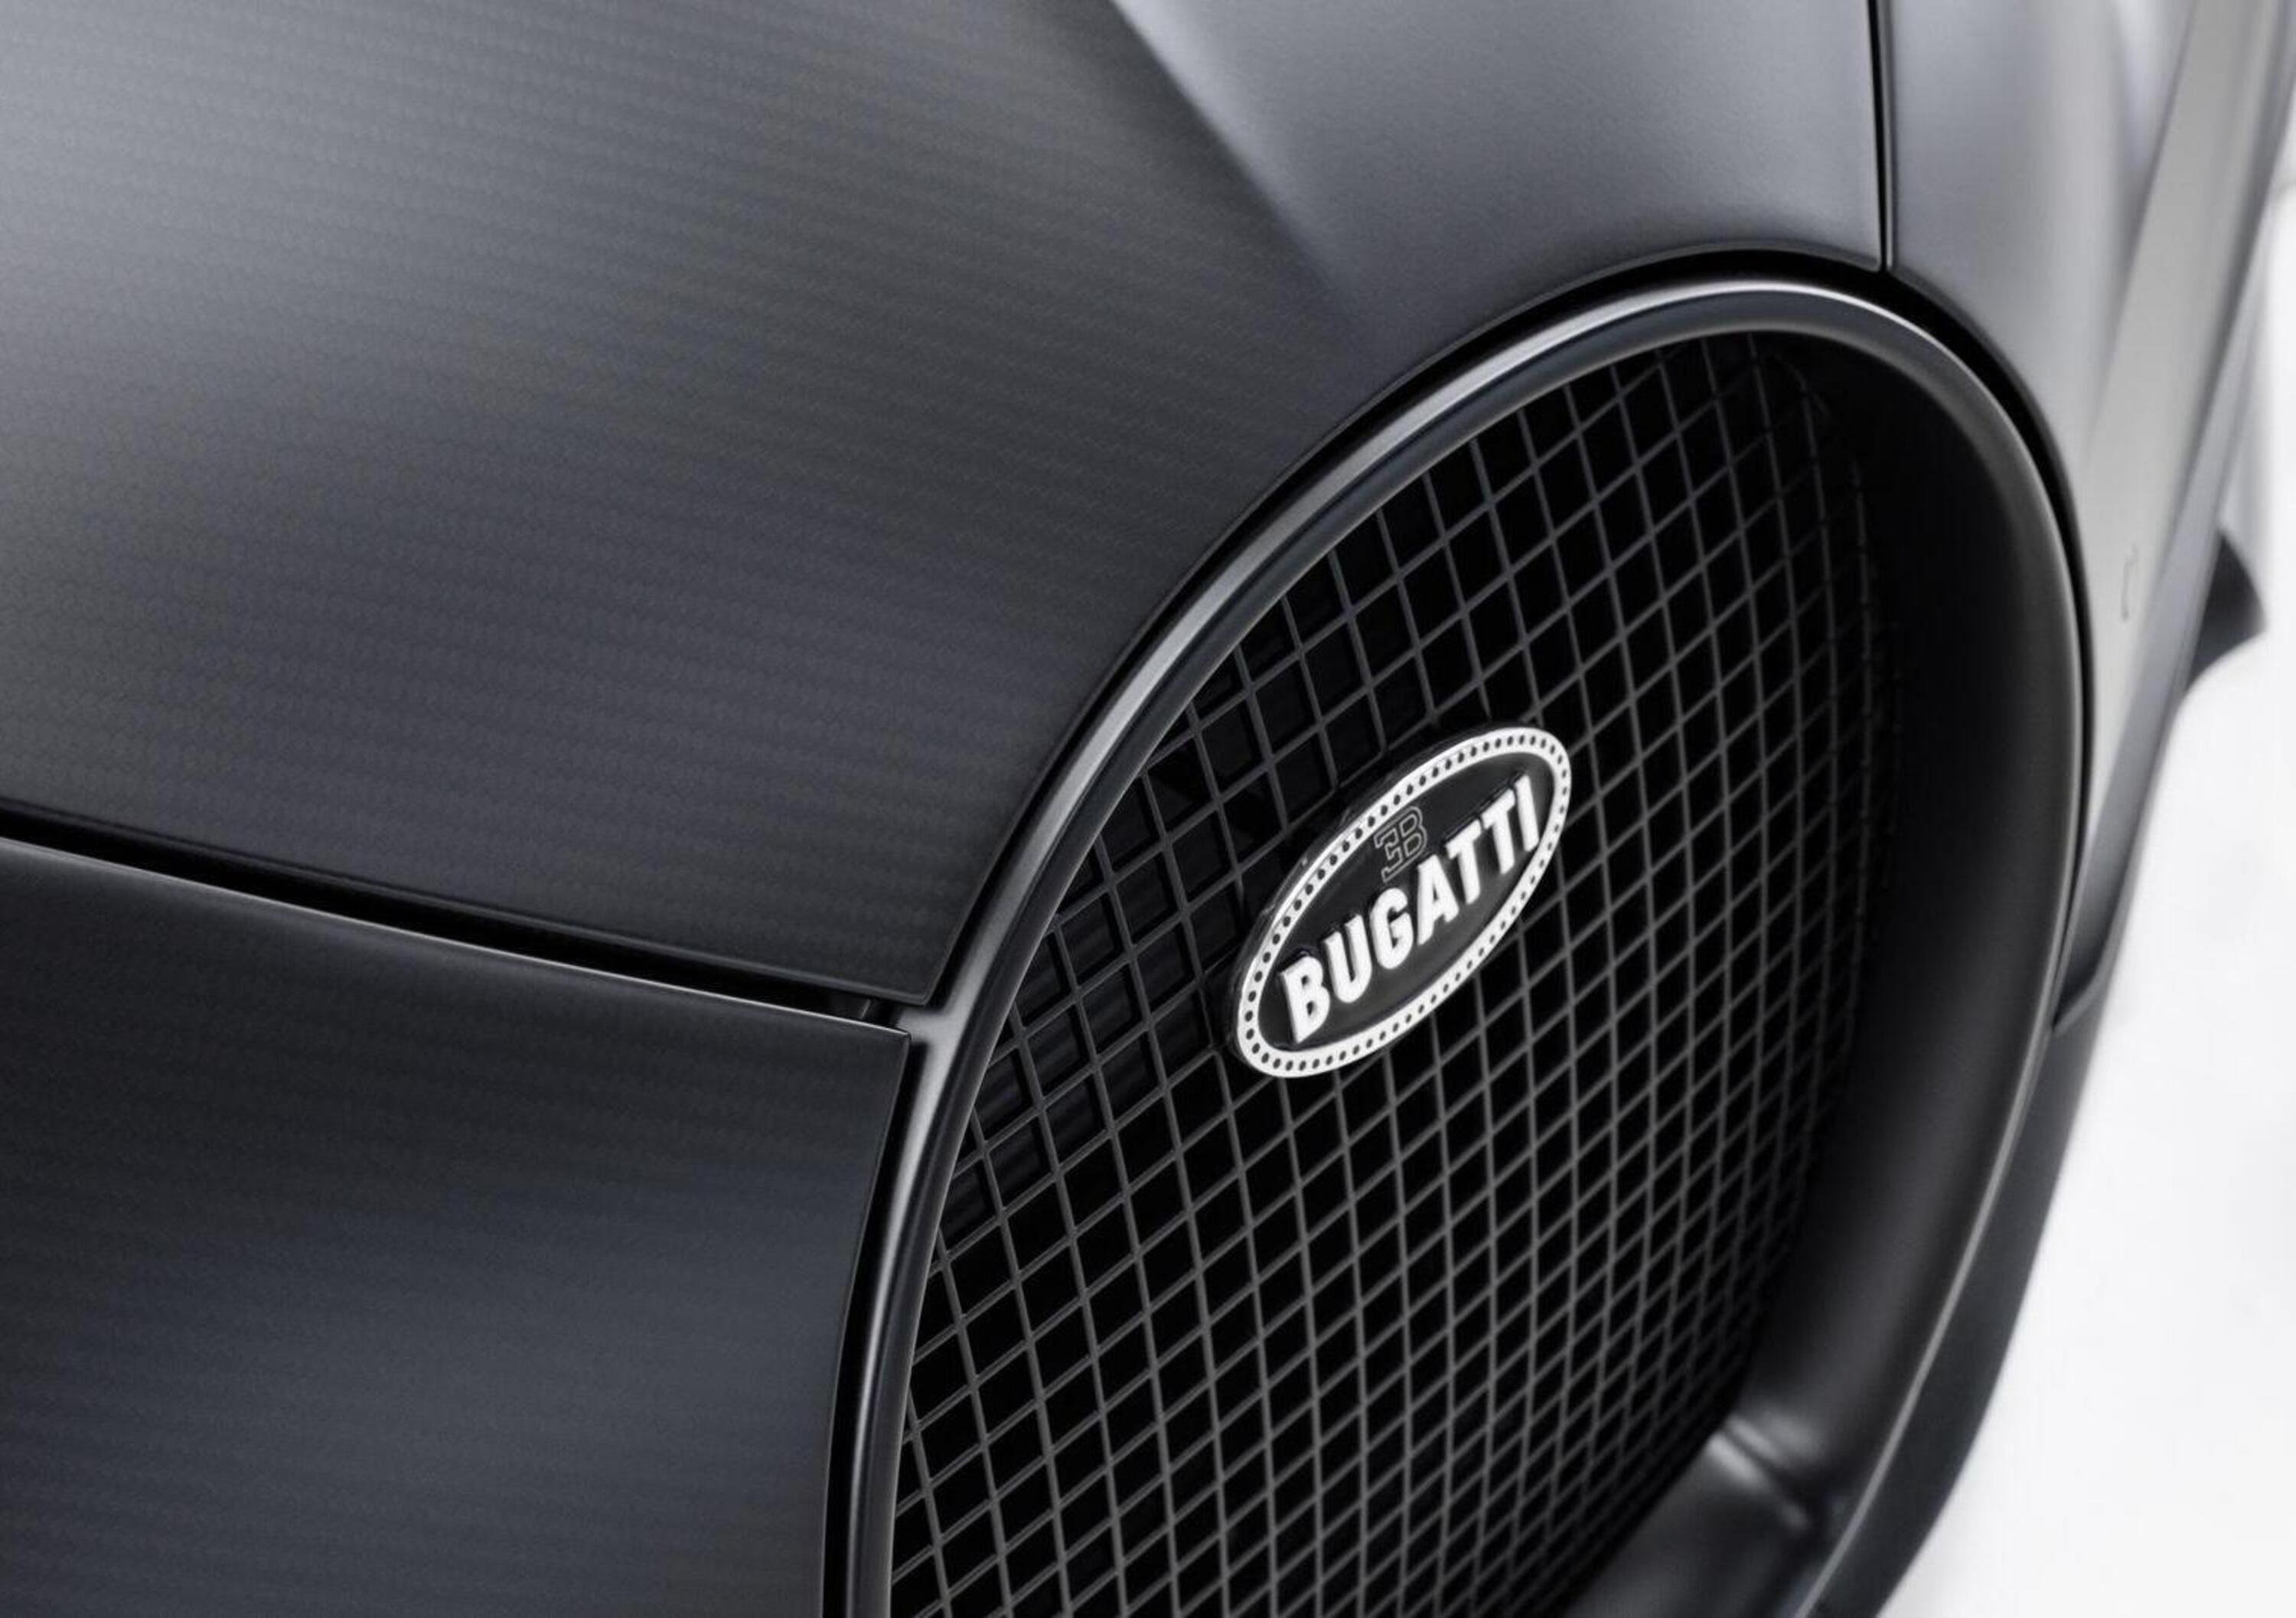 VW-Rimac, nuove indiscrezioni sulle trattative per la cessione di Bugatti